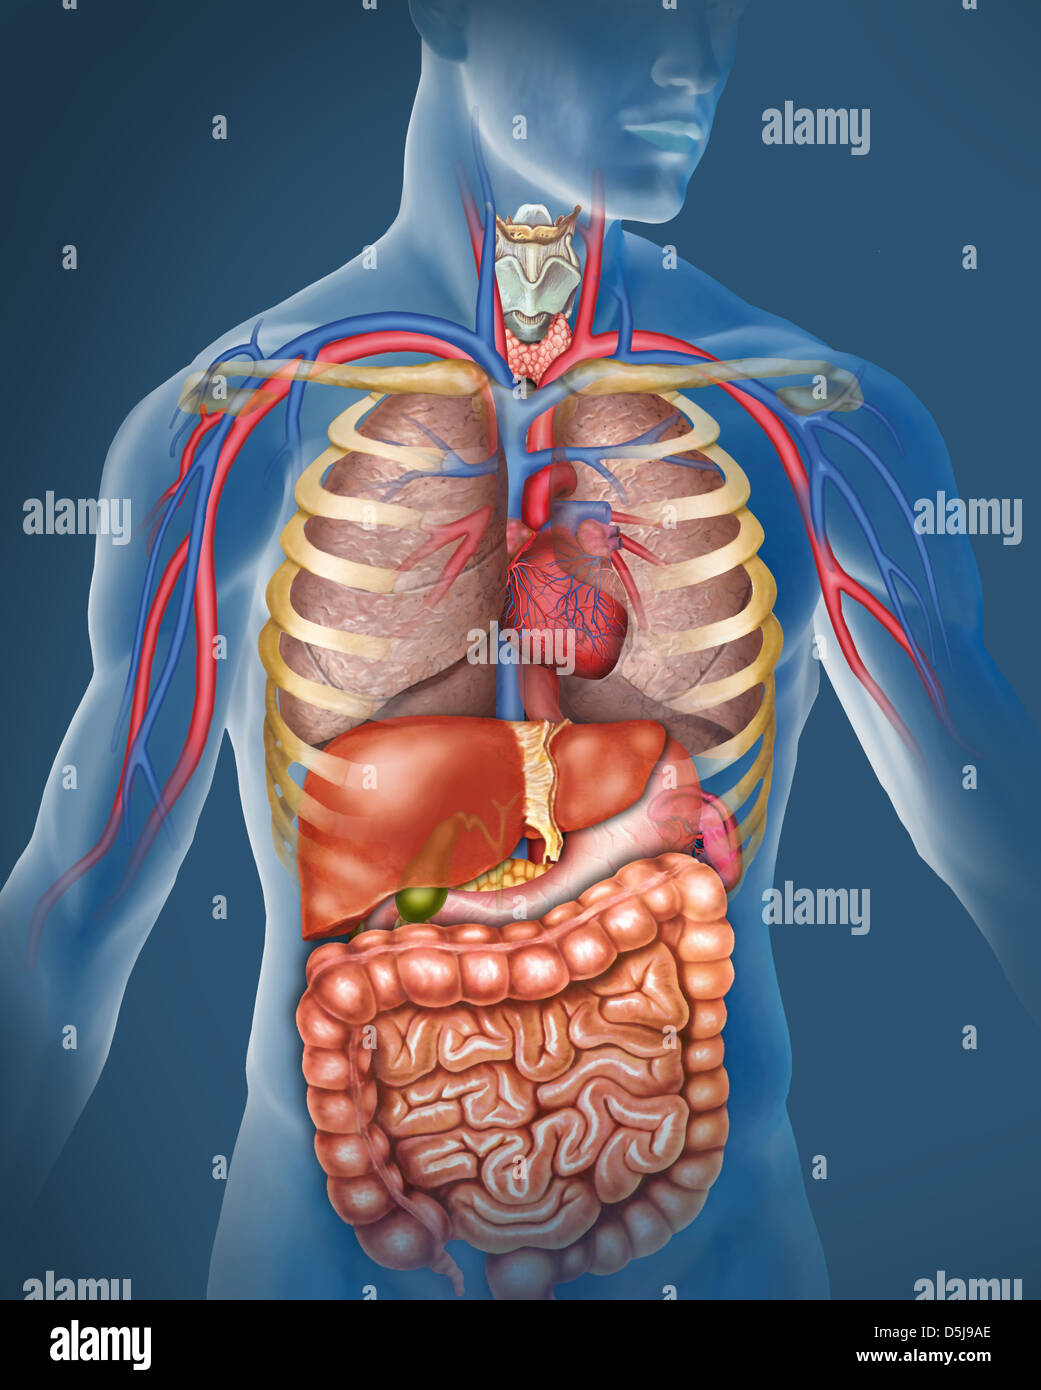 anatomía del cuerpo humano. Ilustración compuesta por el sistema respiratorio, pulmones tráquea, el corazón y las principales venas y arterias, hígado. Stock Photo